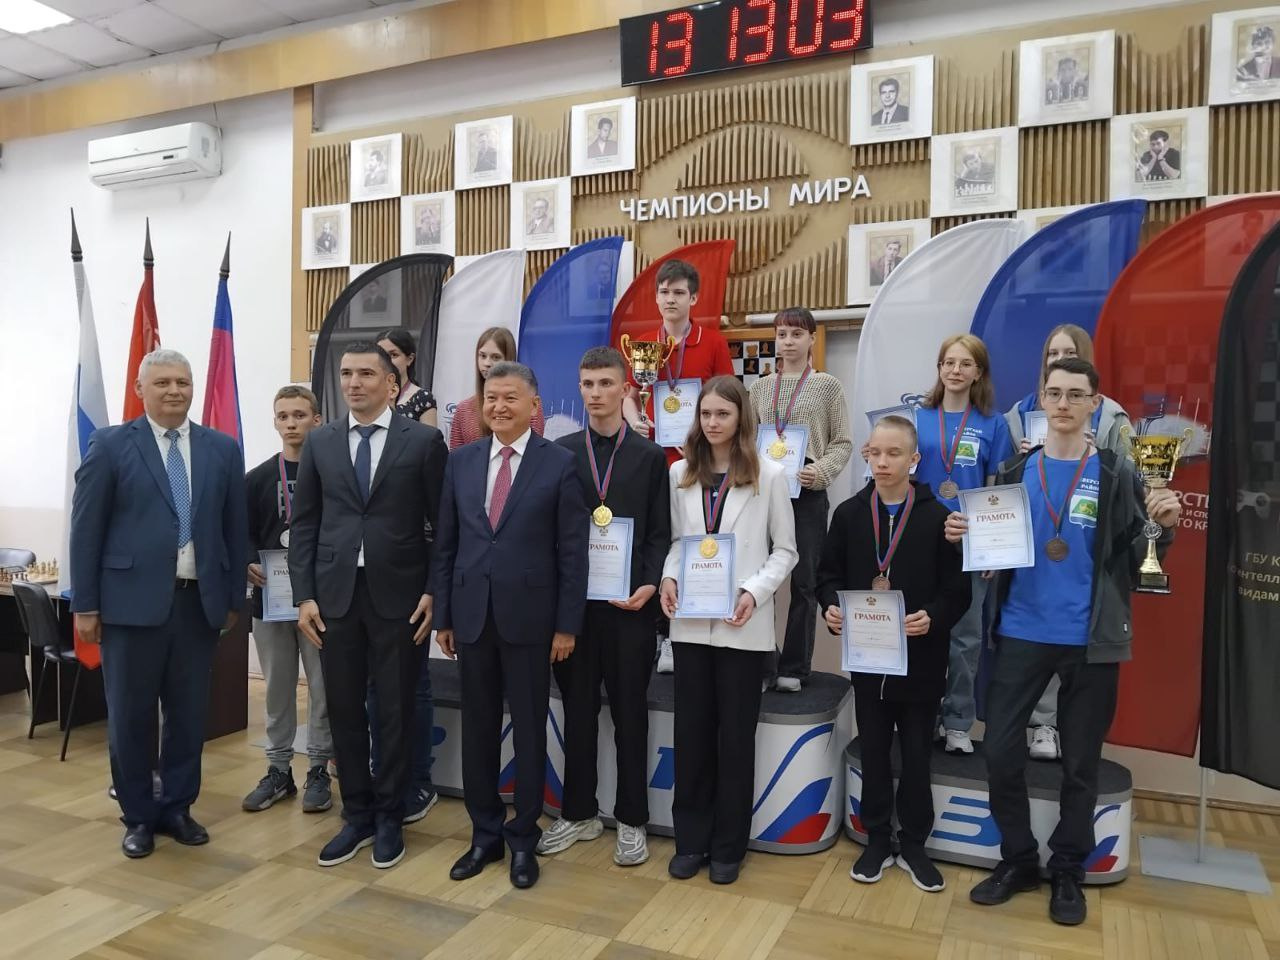 Команда Армавира стала призером XII летней Спартакиады учащихся Кубани по шахматам